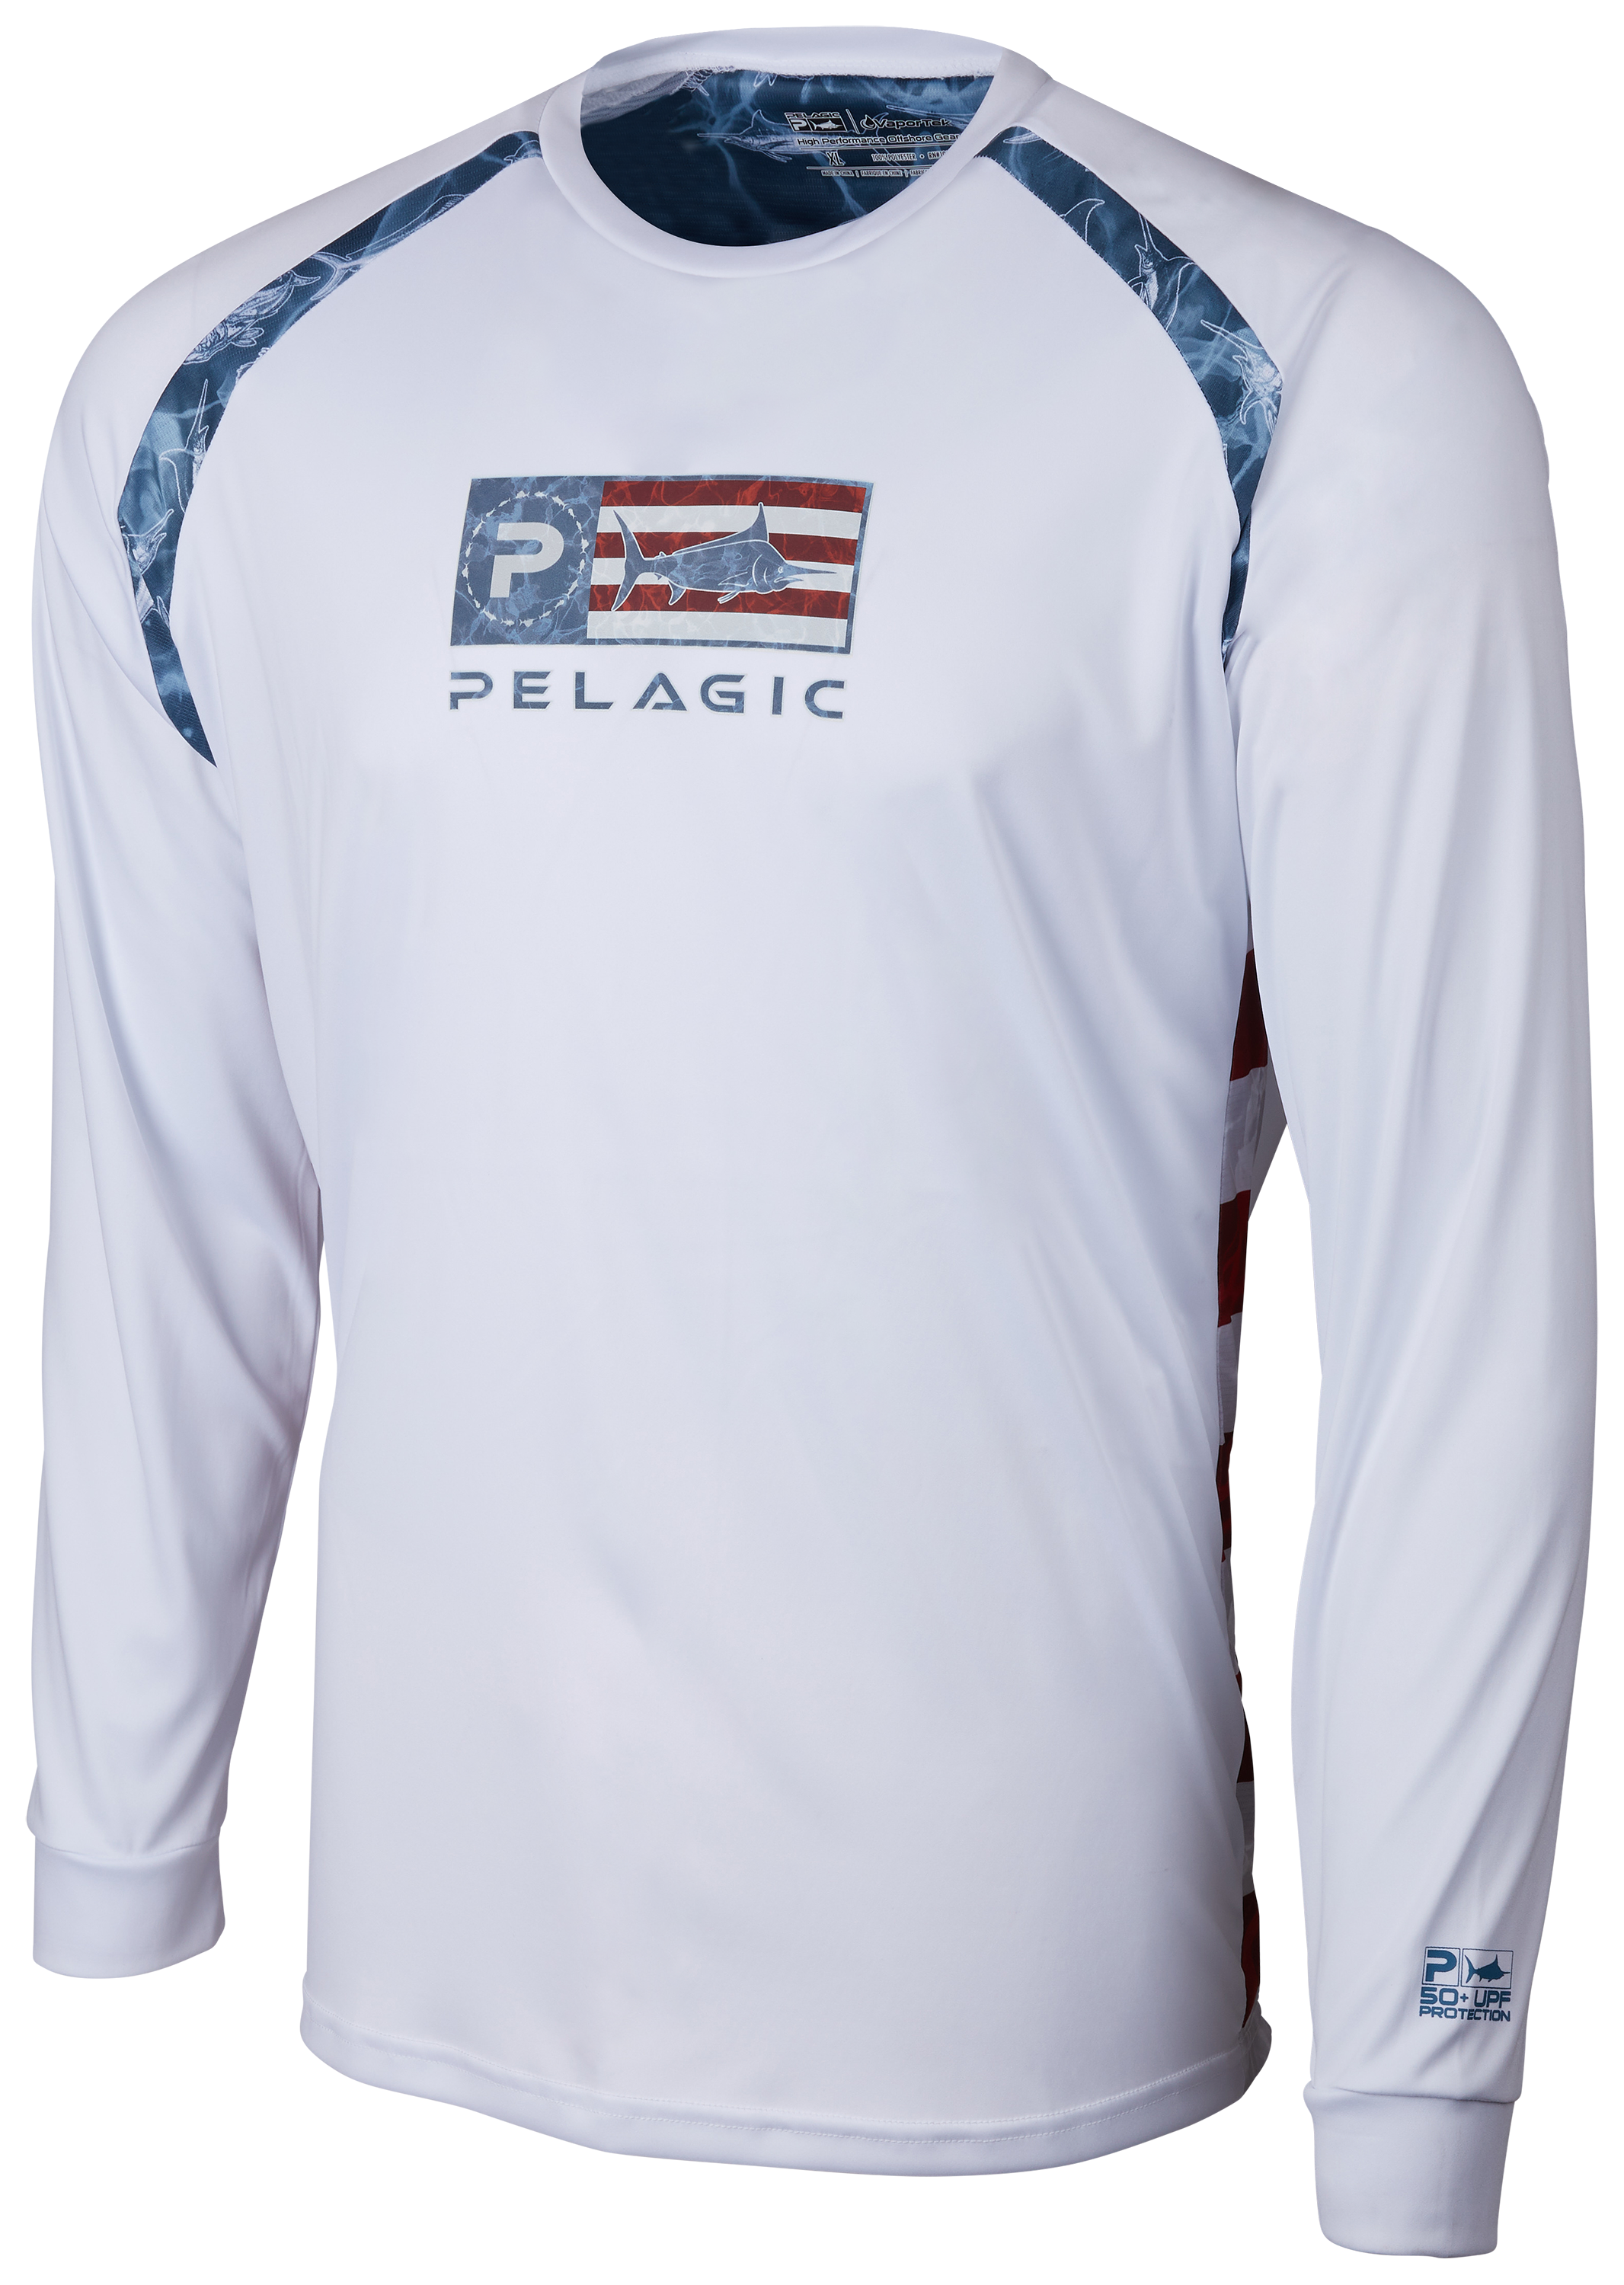 Pelagic VaporTek Sideline Performance Fishing Long-Sleeve Shirt for Men